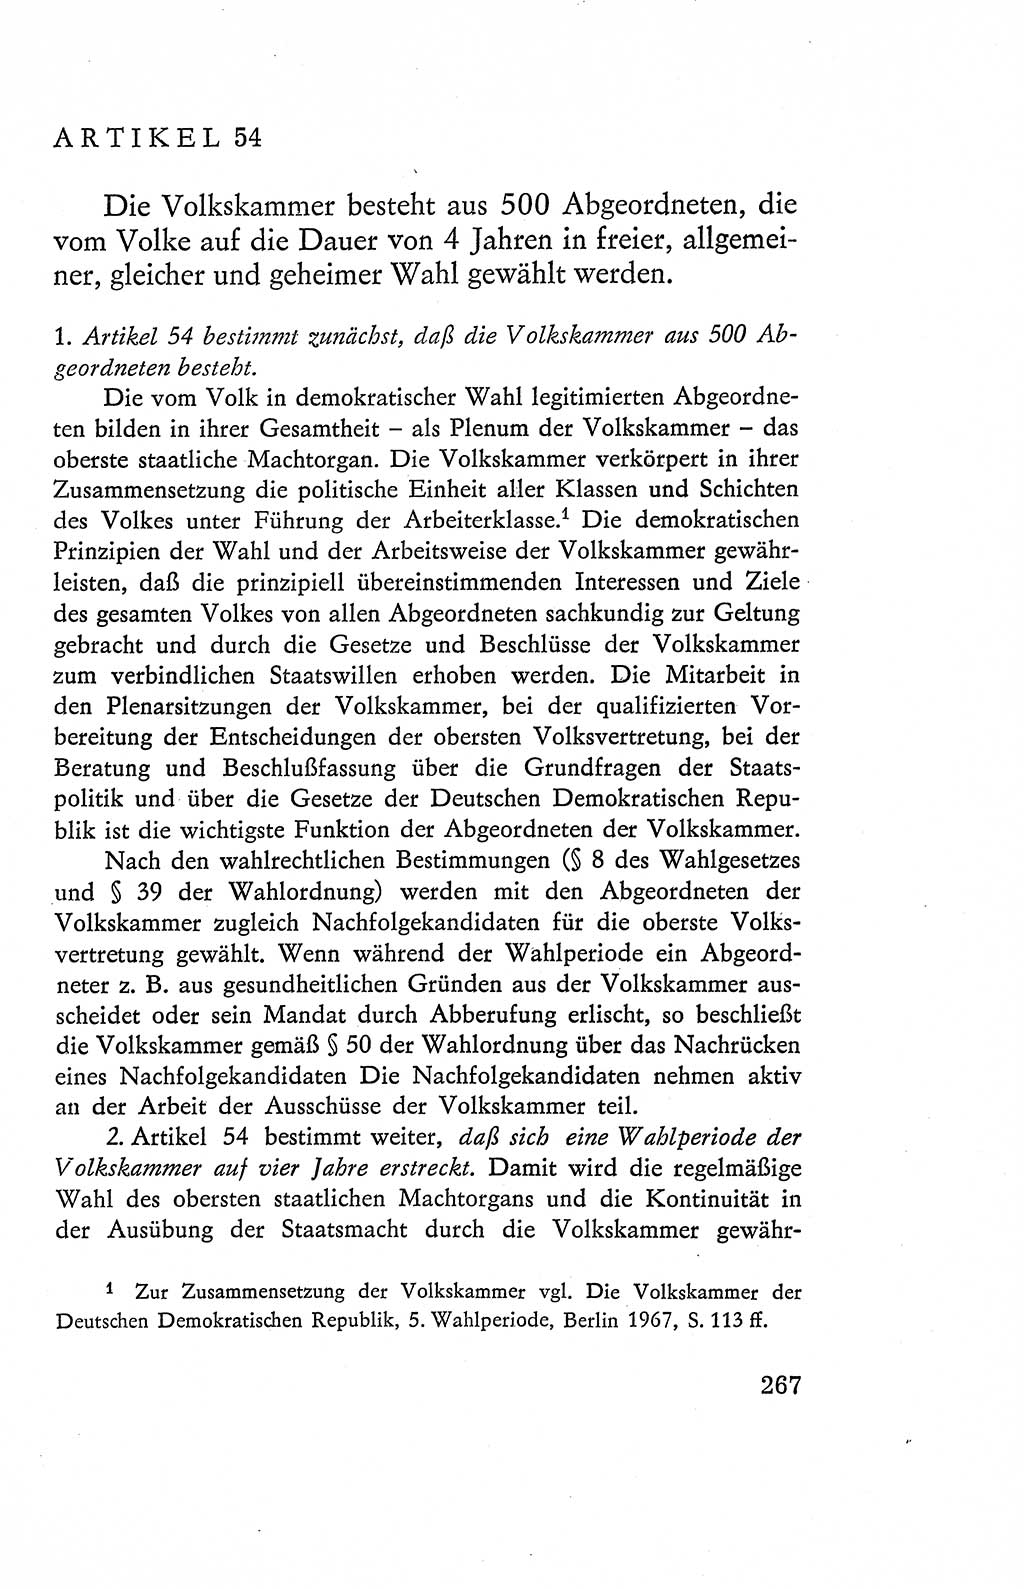 Verfassung der Deutschen Demokratischen Republik (DDR), Dokumente, Kommentar 1969, Band 2, Seite 267 (Verf. DDR Dok. Komm. 1969, Bd. 2, S. 267)